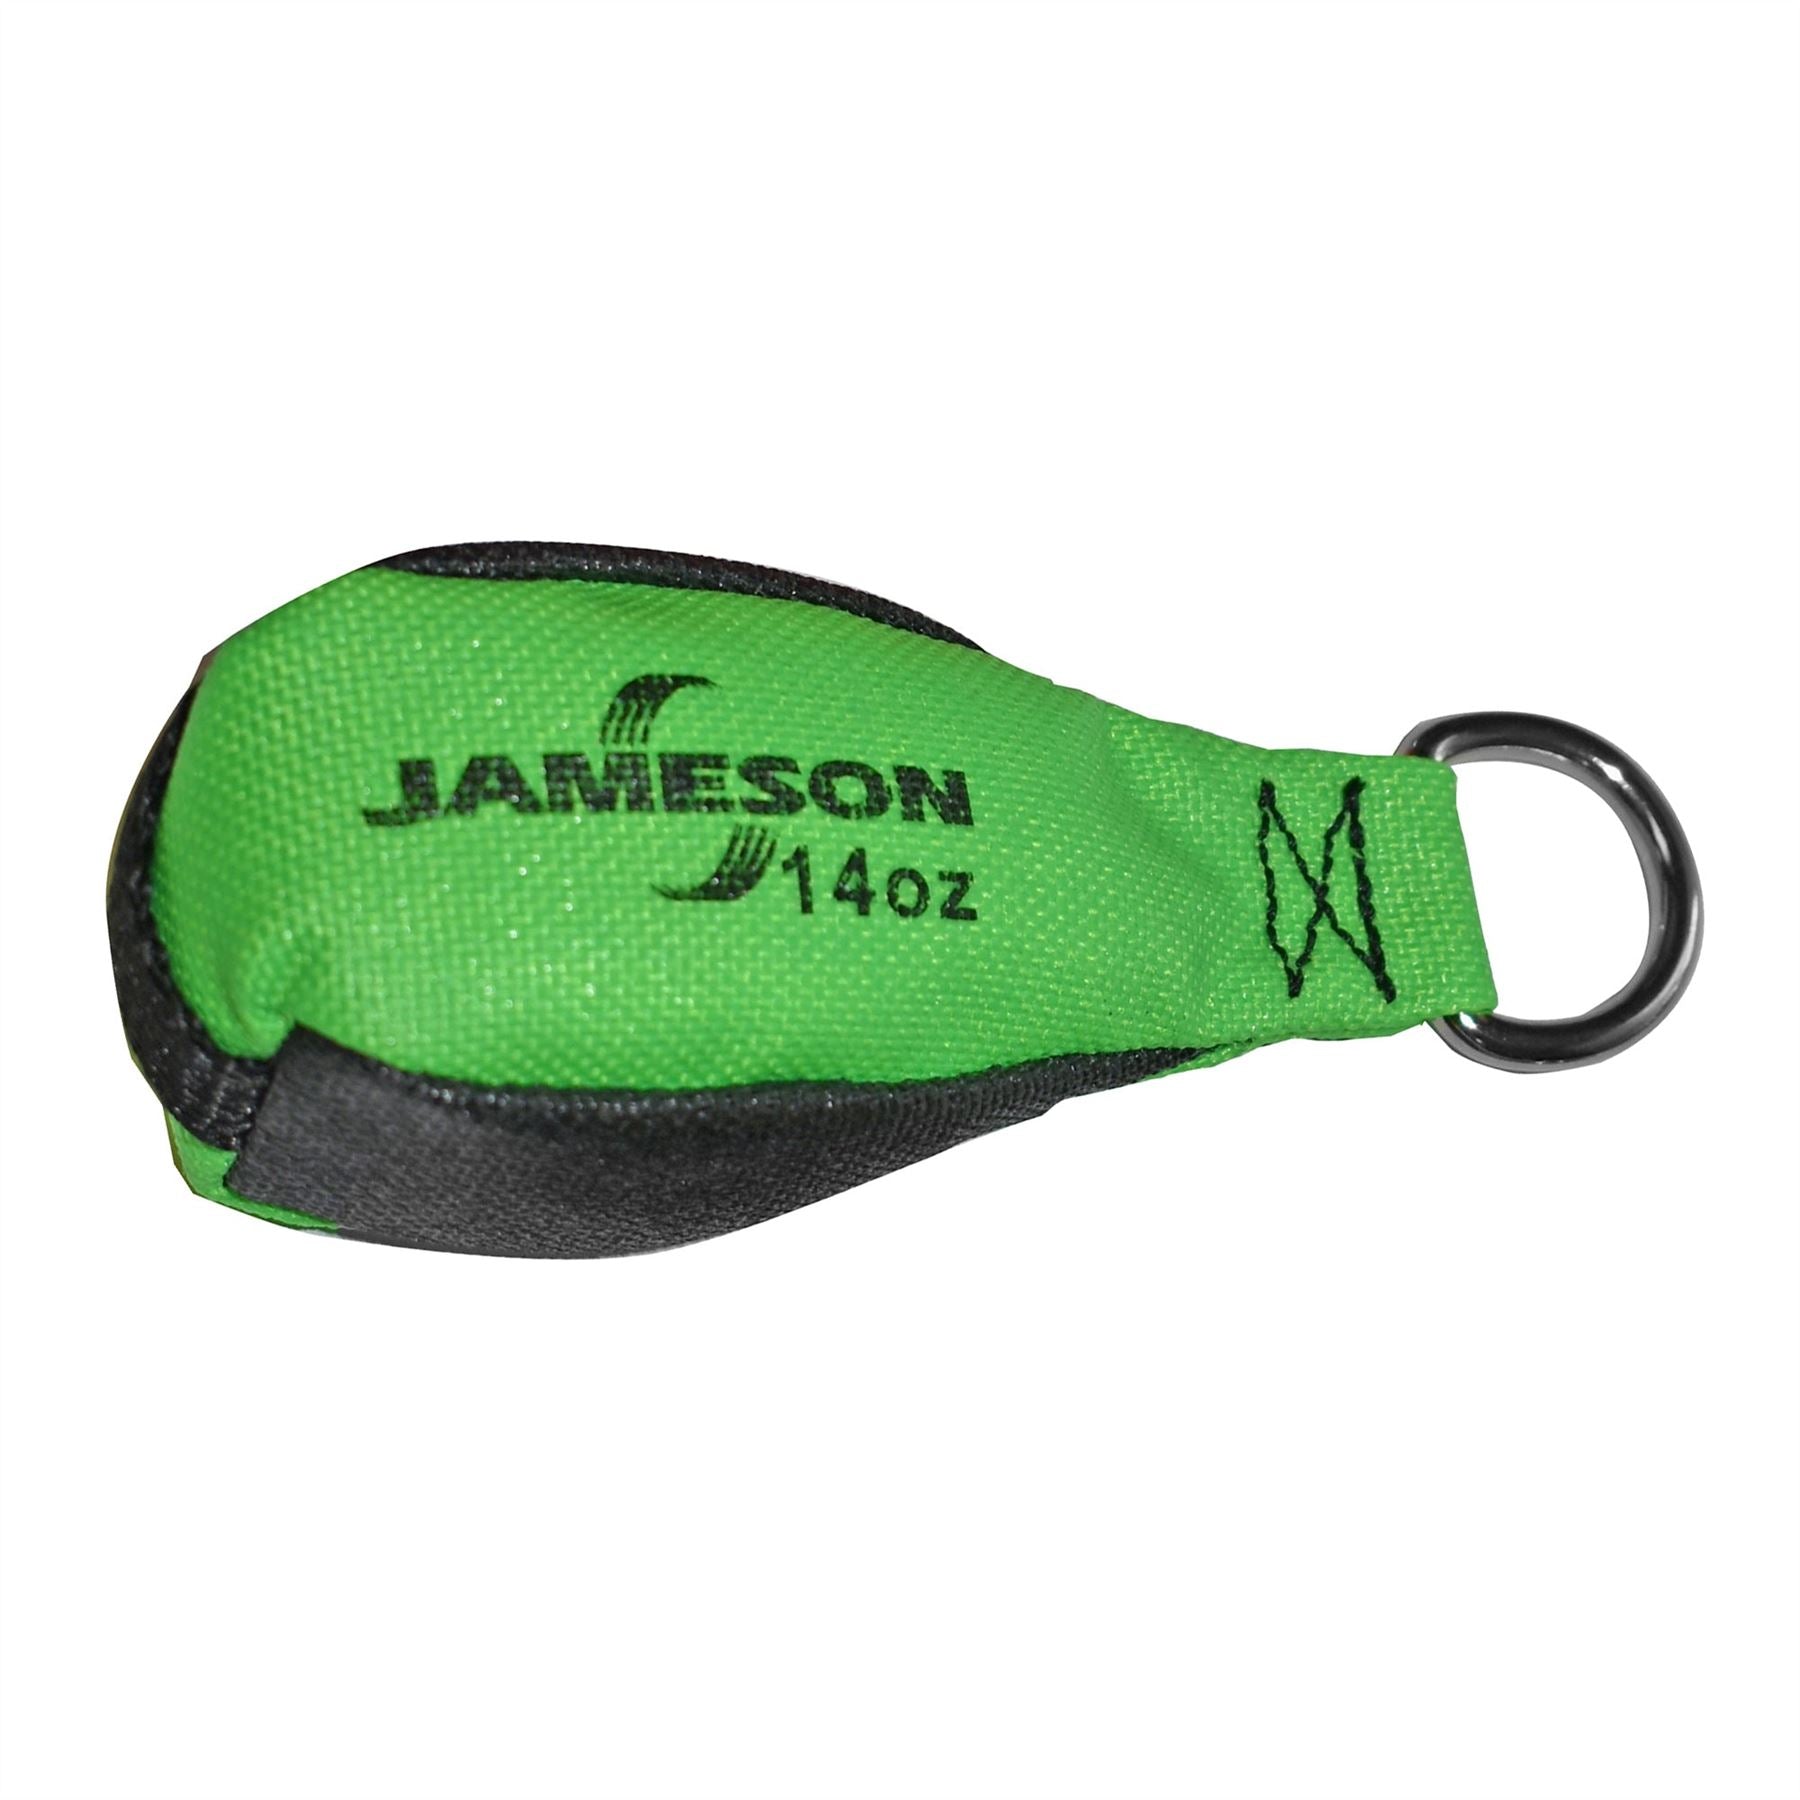 Jameson TB-14 Throw Bag Green, 14oz